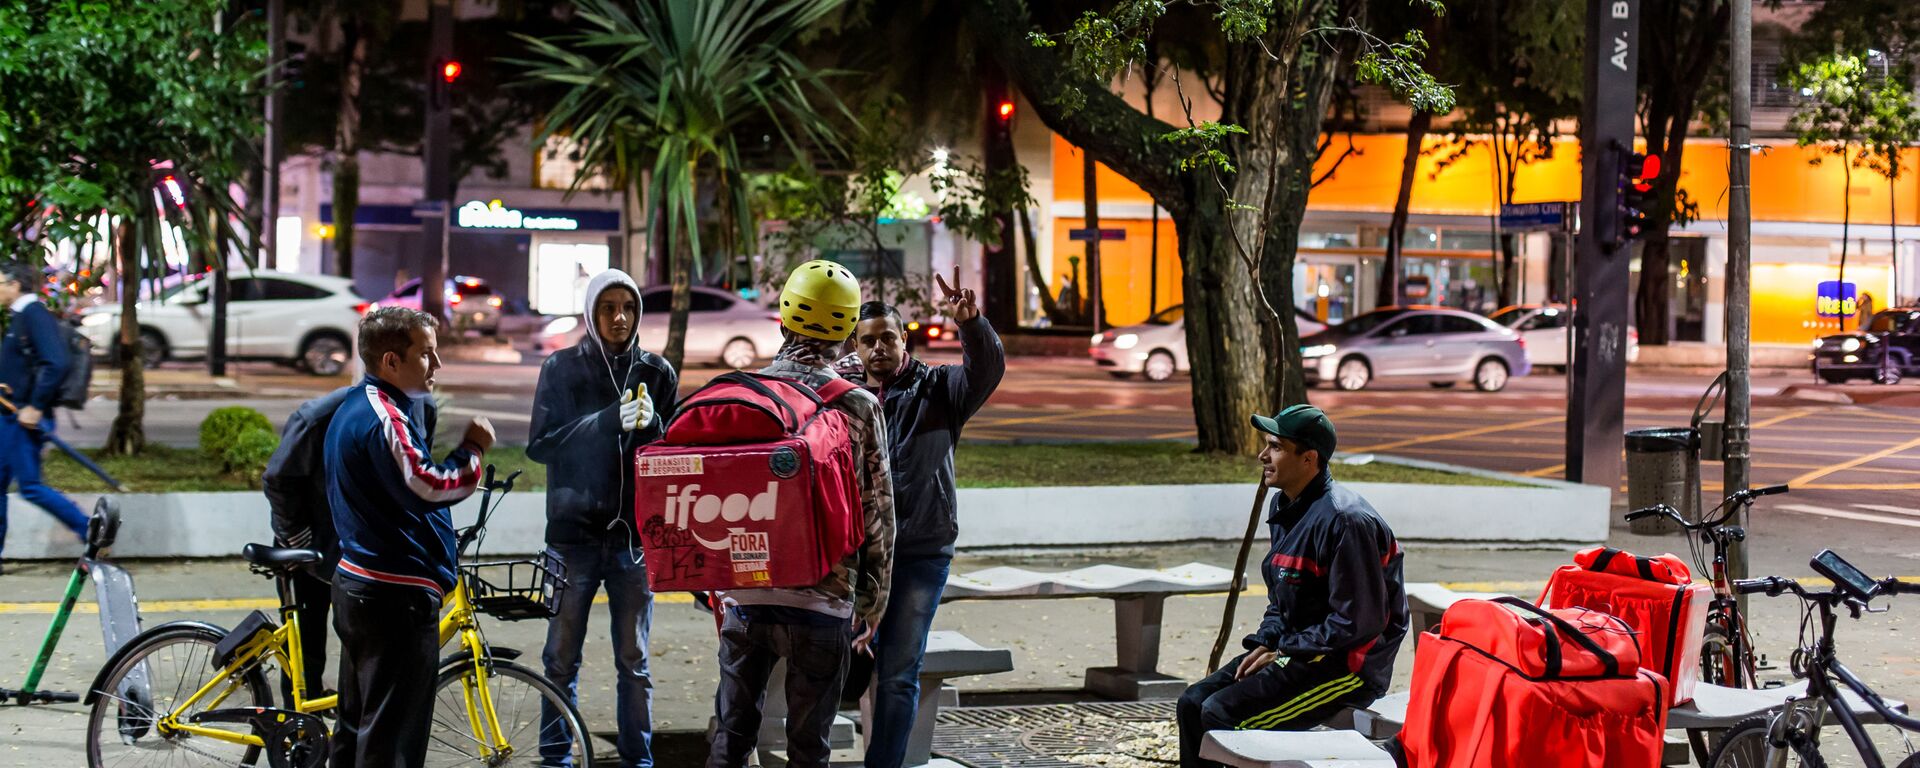 Entregadores de fast-foods por aplicativo que utilizam bicicletas e patinetes para se locomover, se reúnem na praça Osvaldo Cruz, em São Paulo, à espera de chamadas - Sputnik Brasil, 1920, 19.12.2019